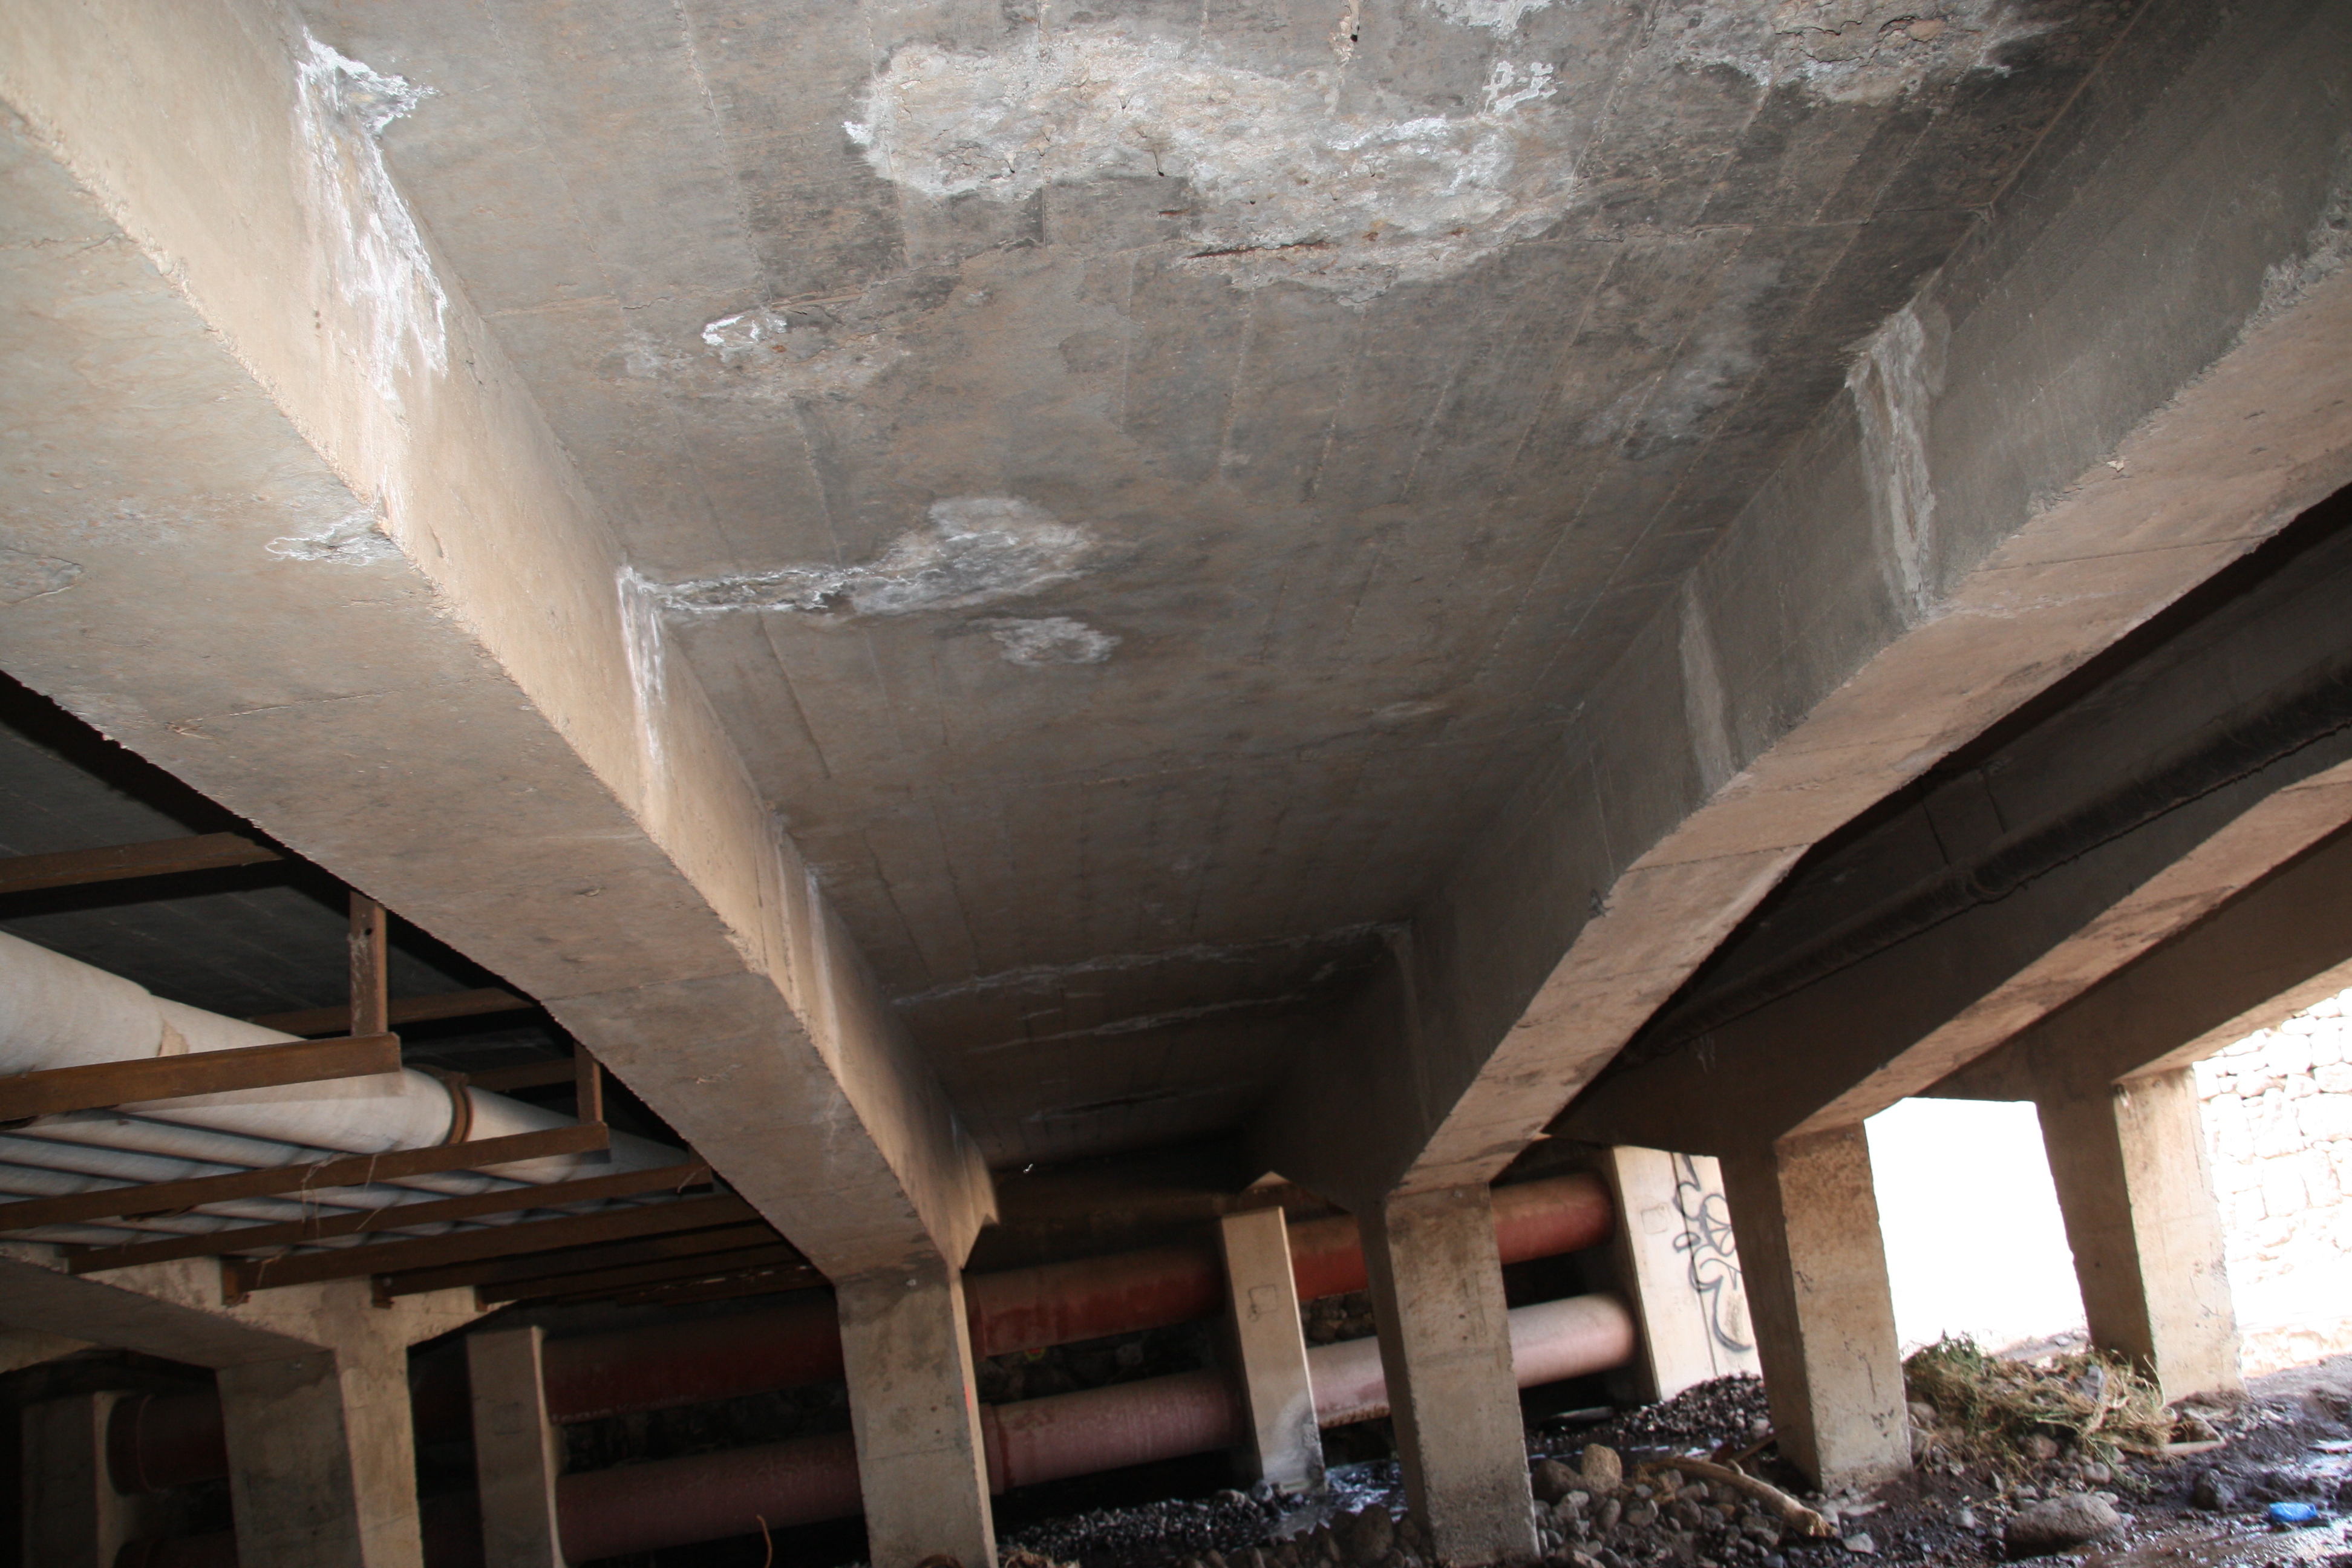 Redacción de proyecto “Sustitución y reparación de los puentes existentes sobre el barranco de Santos entre Bravo Murillo y la avenida Marítima”.